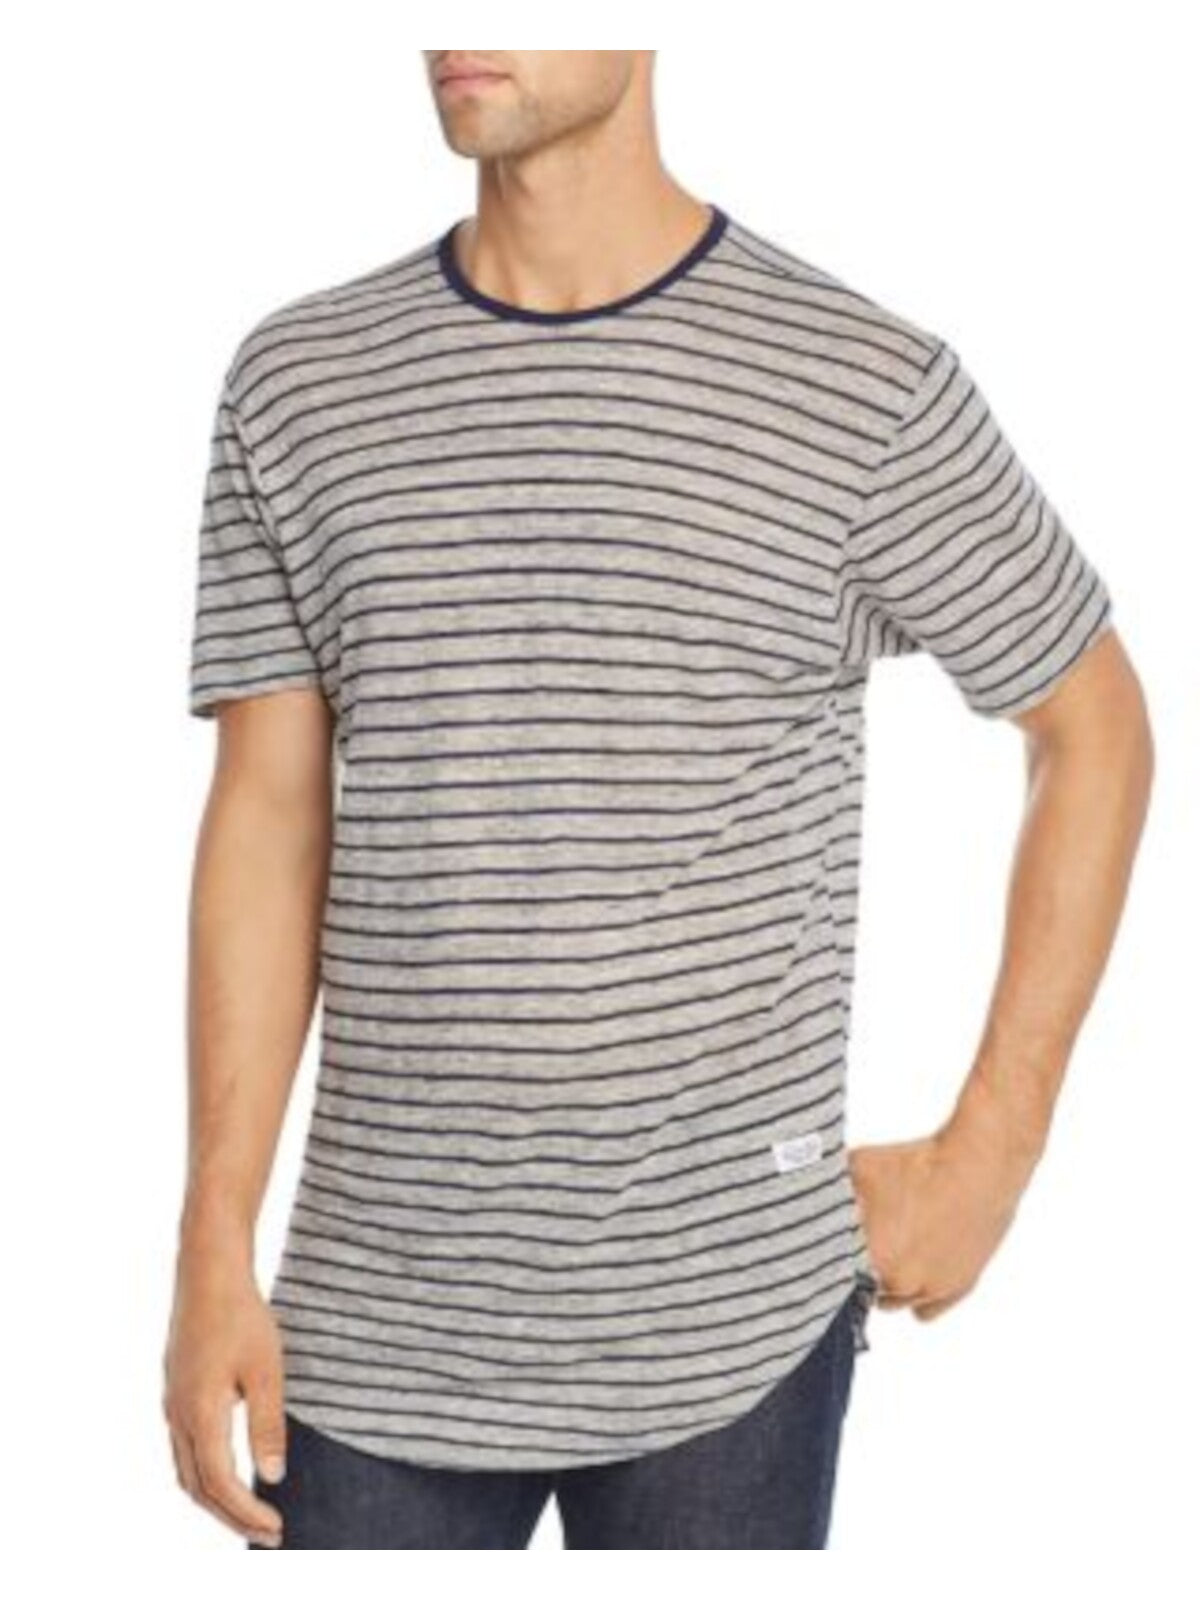 KINETIX Mens Gray Classic Fit T-Shirt XL